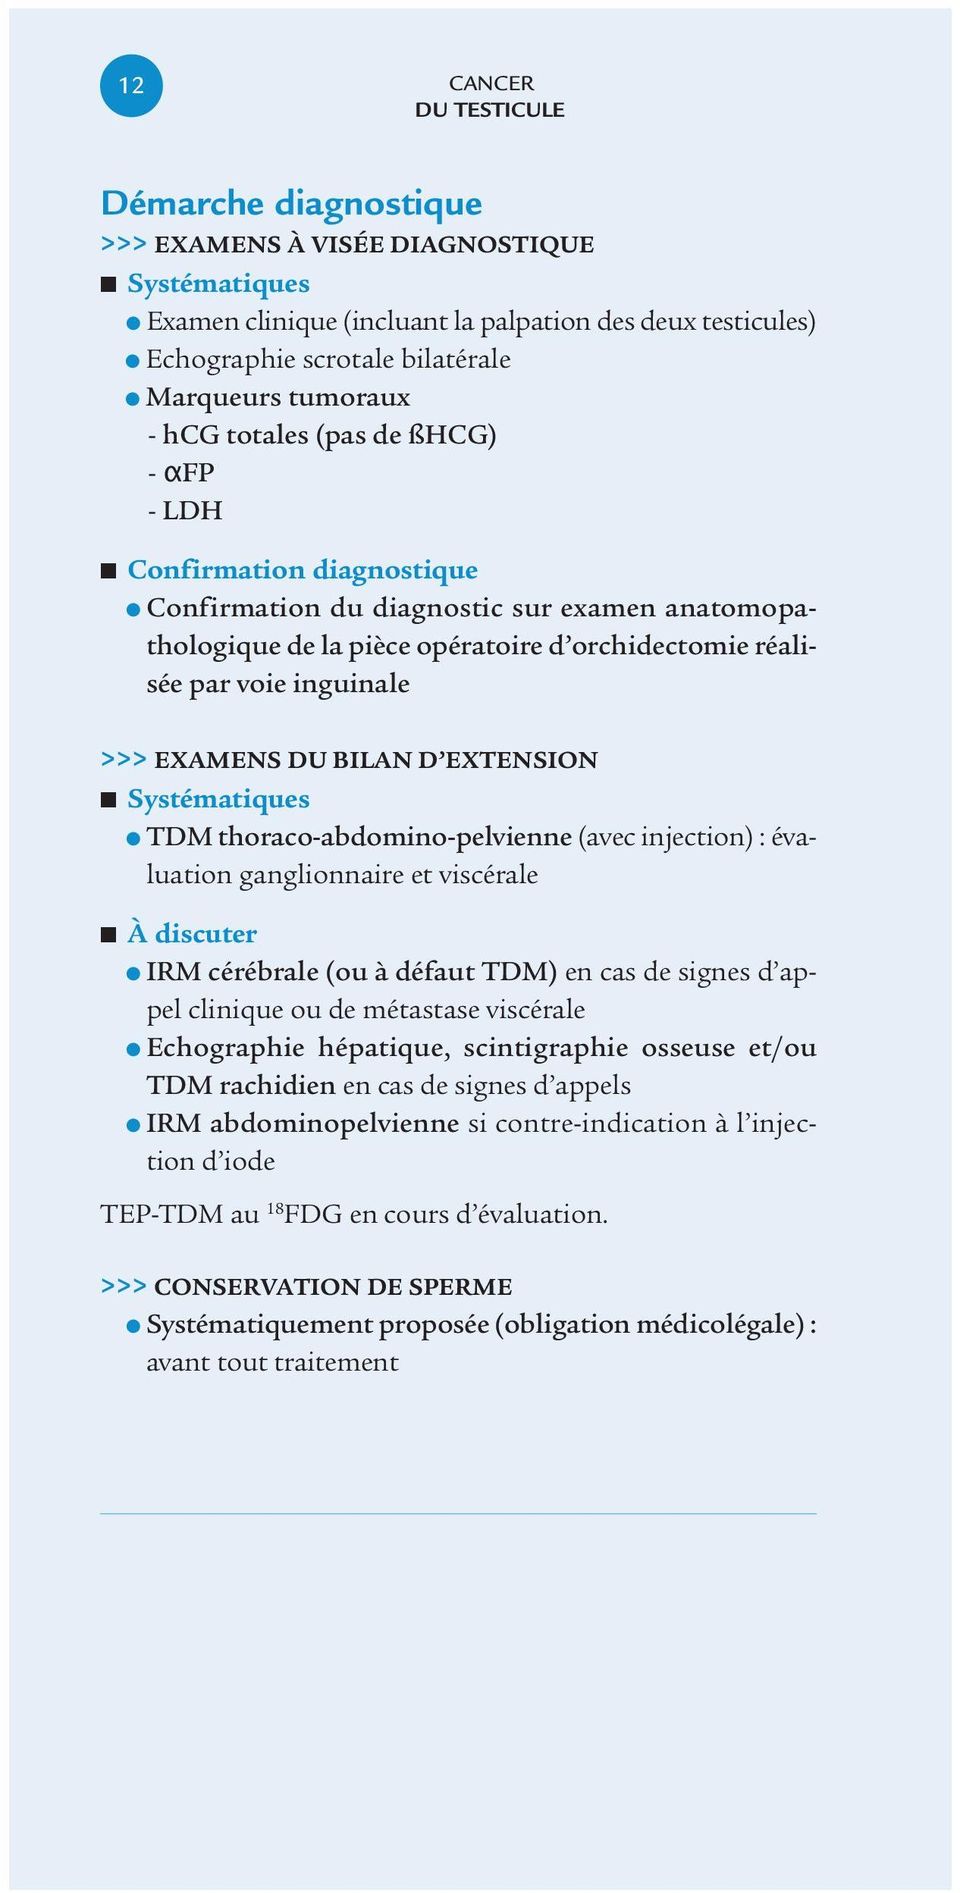 >>> EXAMENS DU BILAN D EXTENSION Systématiques TDM thoraco-abdomino-pelvienne (avec injection) : évaluation ganglionnaire et viscérale À discuter IRM cérébrale (ou à défaut TDM) en cas de signes d